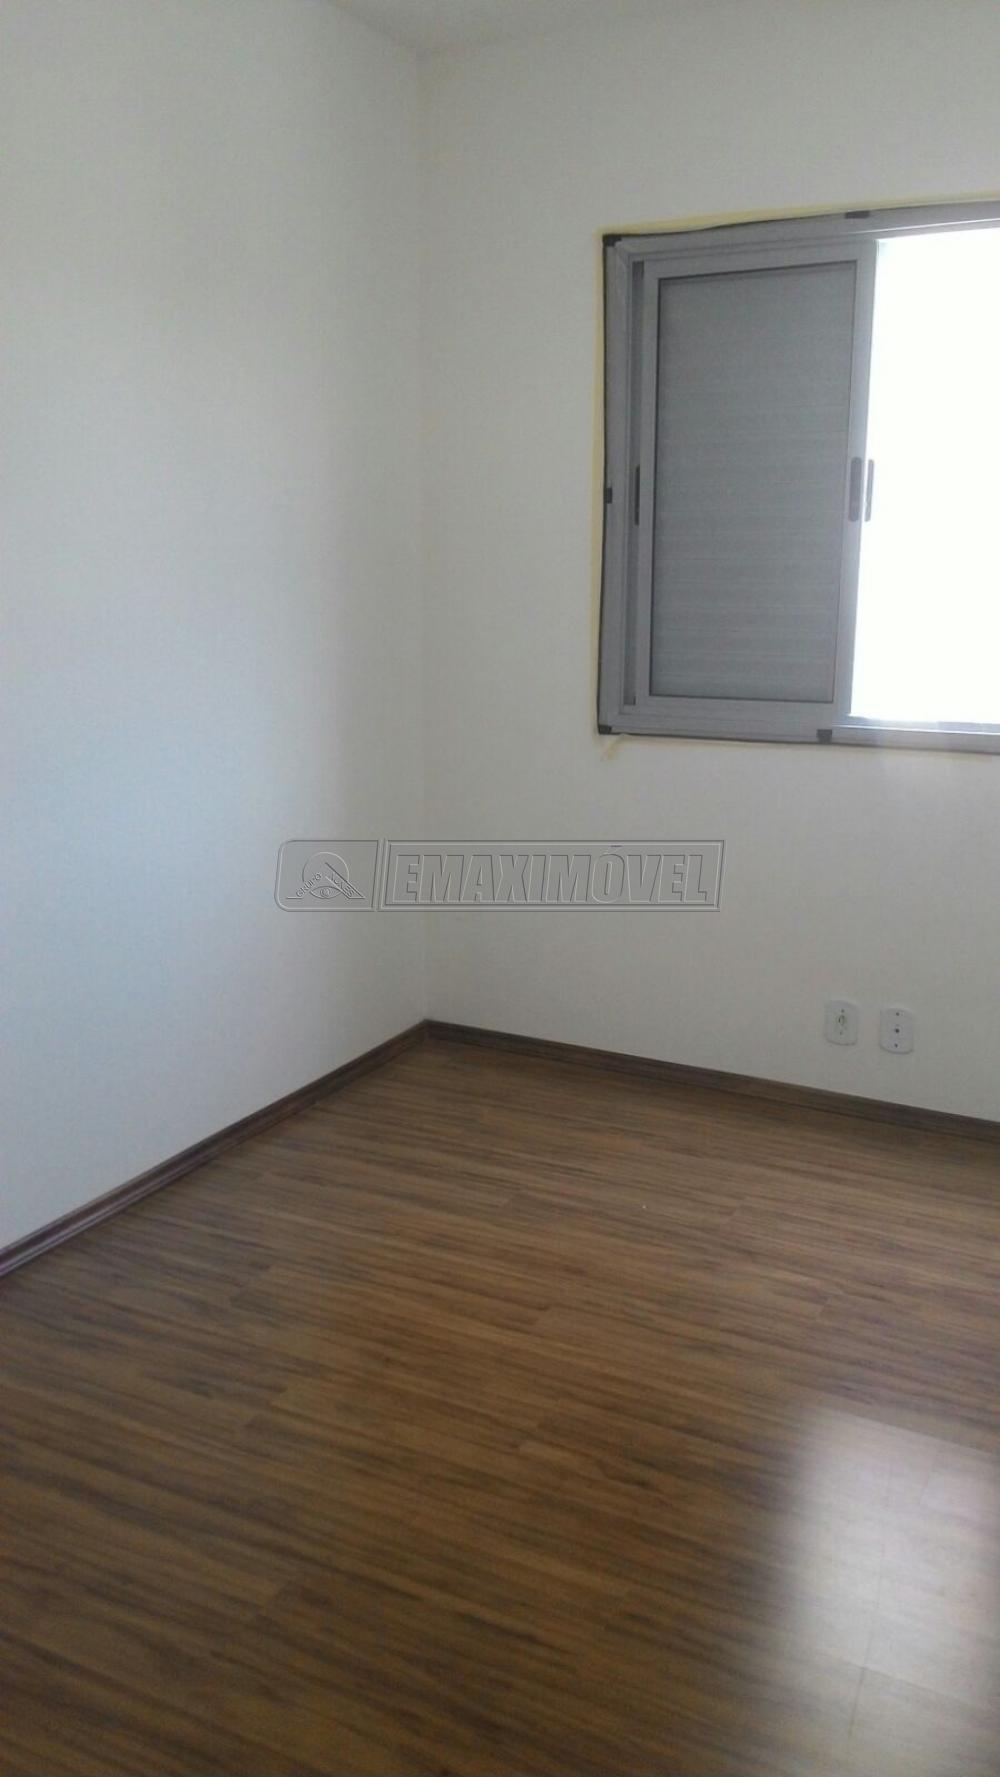 Comprar Apartamento / Padrão em Sorocaba R$ 195.000,00 - Foto 7